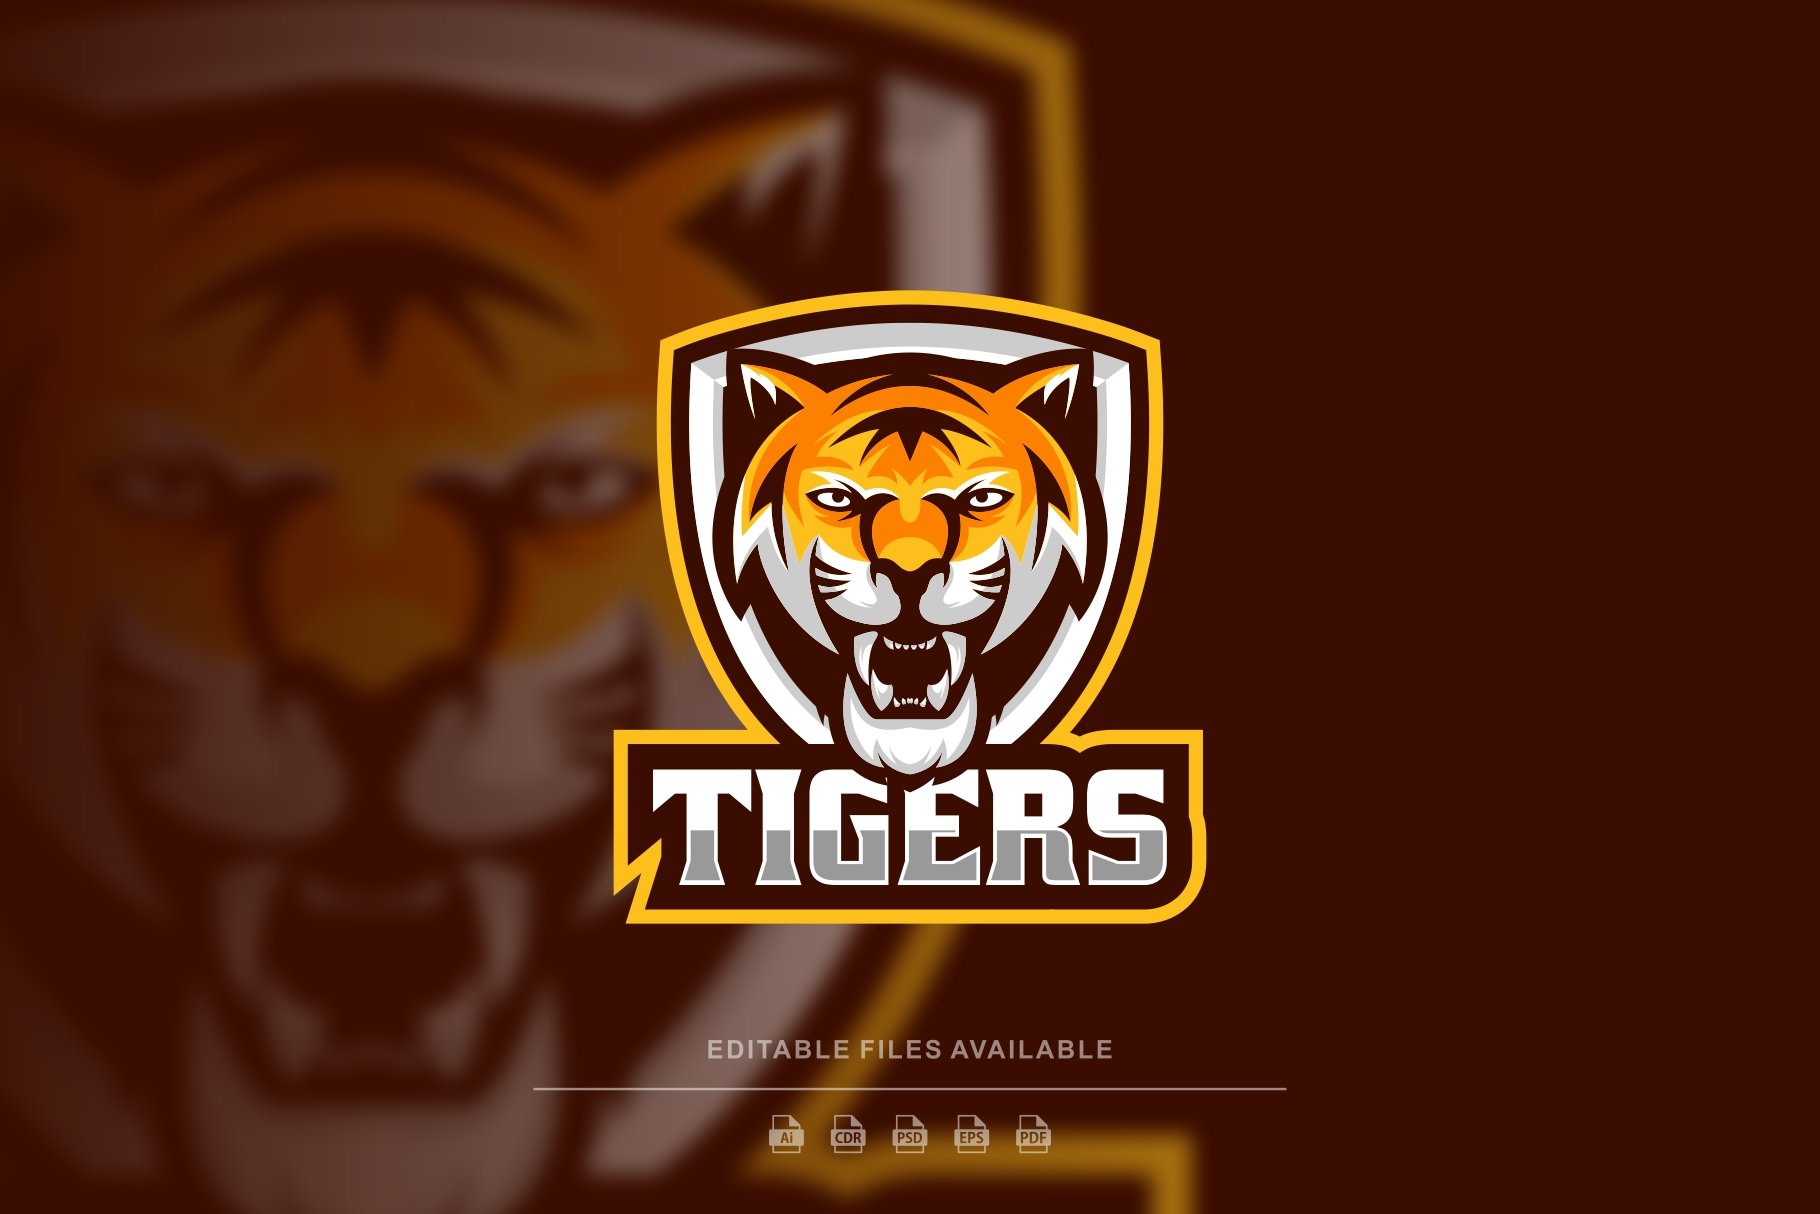 Tiger E-Sport Logo cover image.